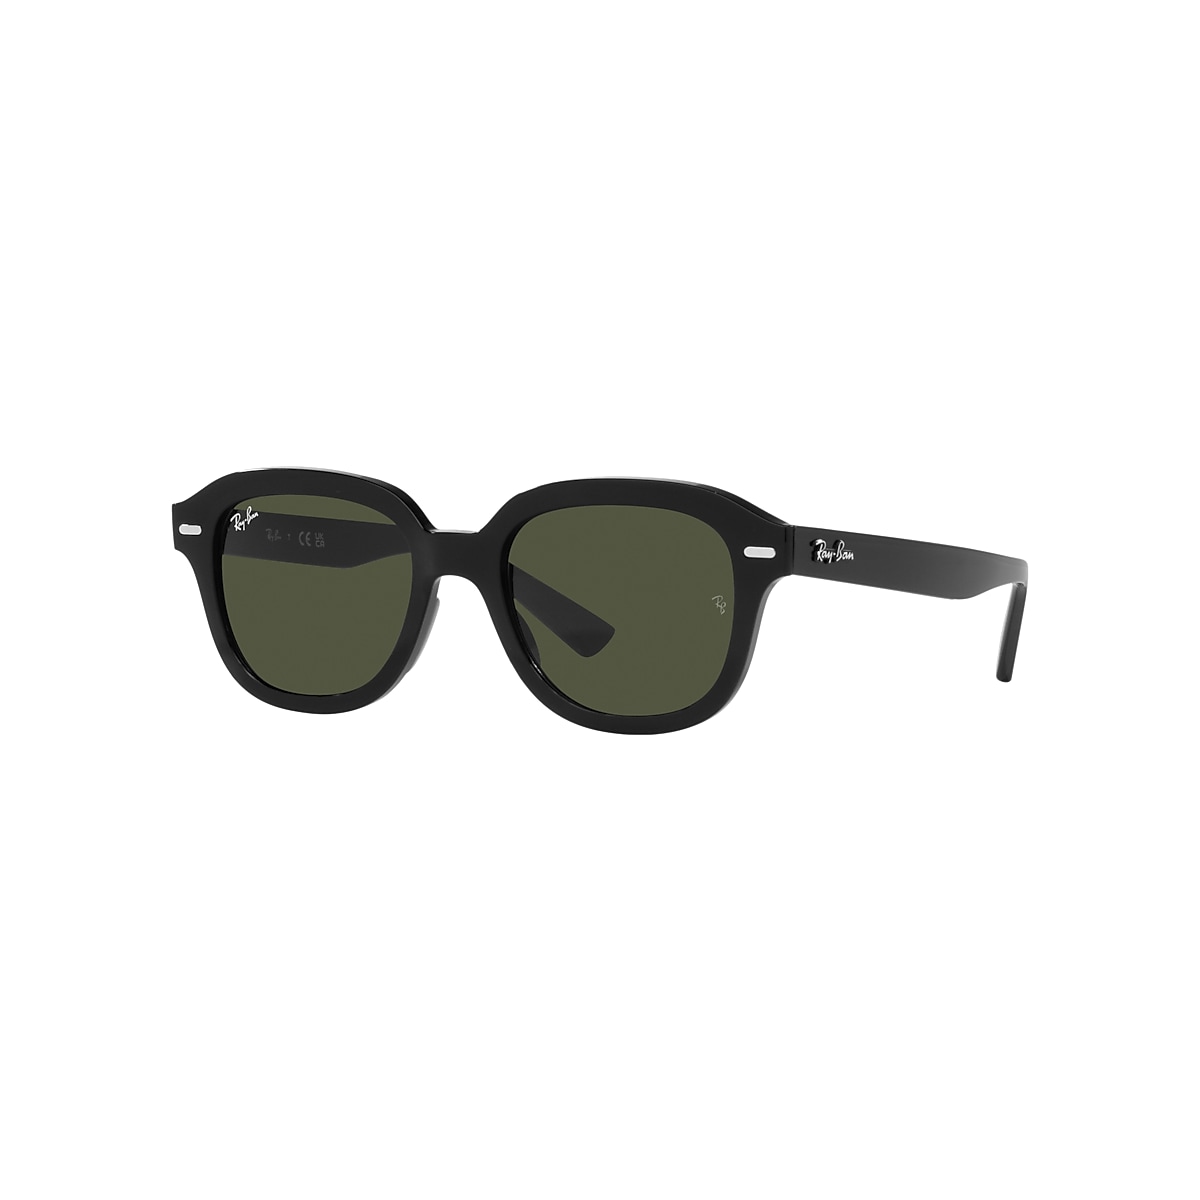 Ray-Ban Erik Sunglasses Black Frame Green Lenses 53-20